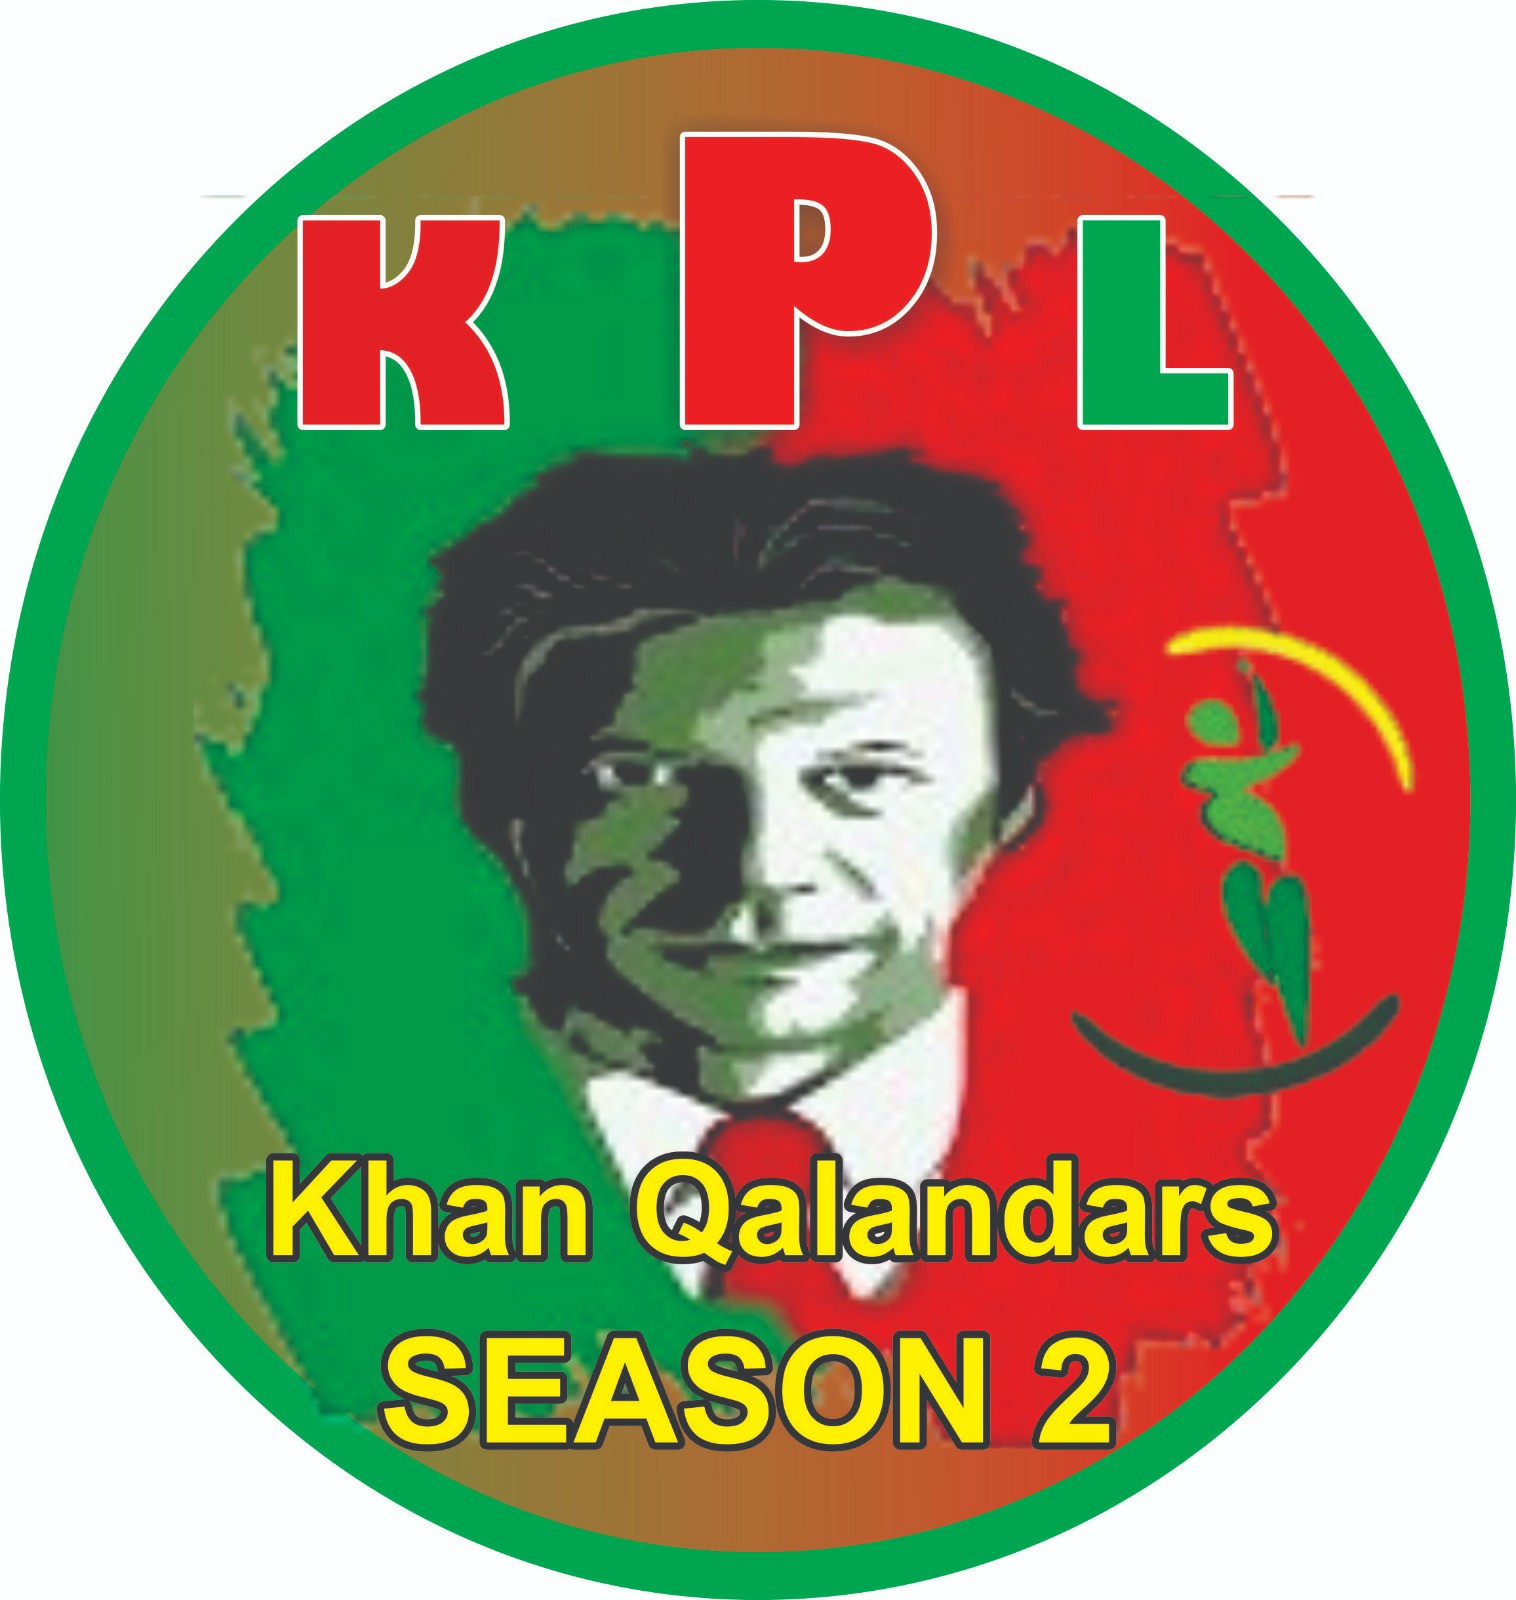 Khan Qalander